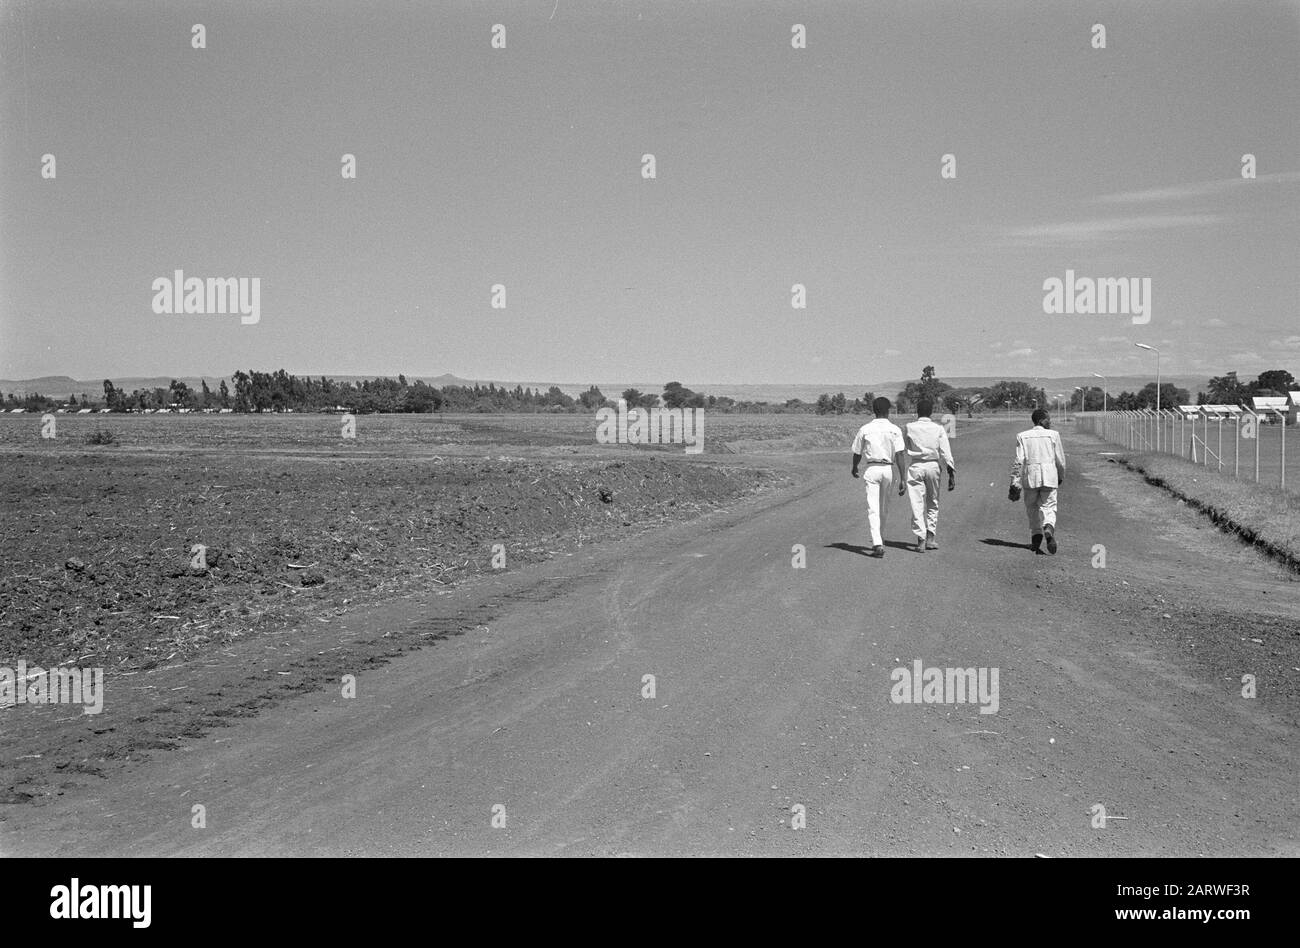 Plantation de canne à sucre de l'HVA à Wonji (Ethiopie) Date : 27 janvier 1969 lieu : Ethiopie, Wonji mots clés : plantations Banque D'Images